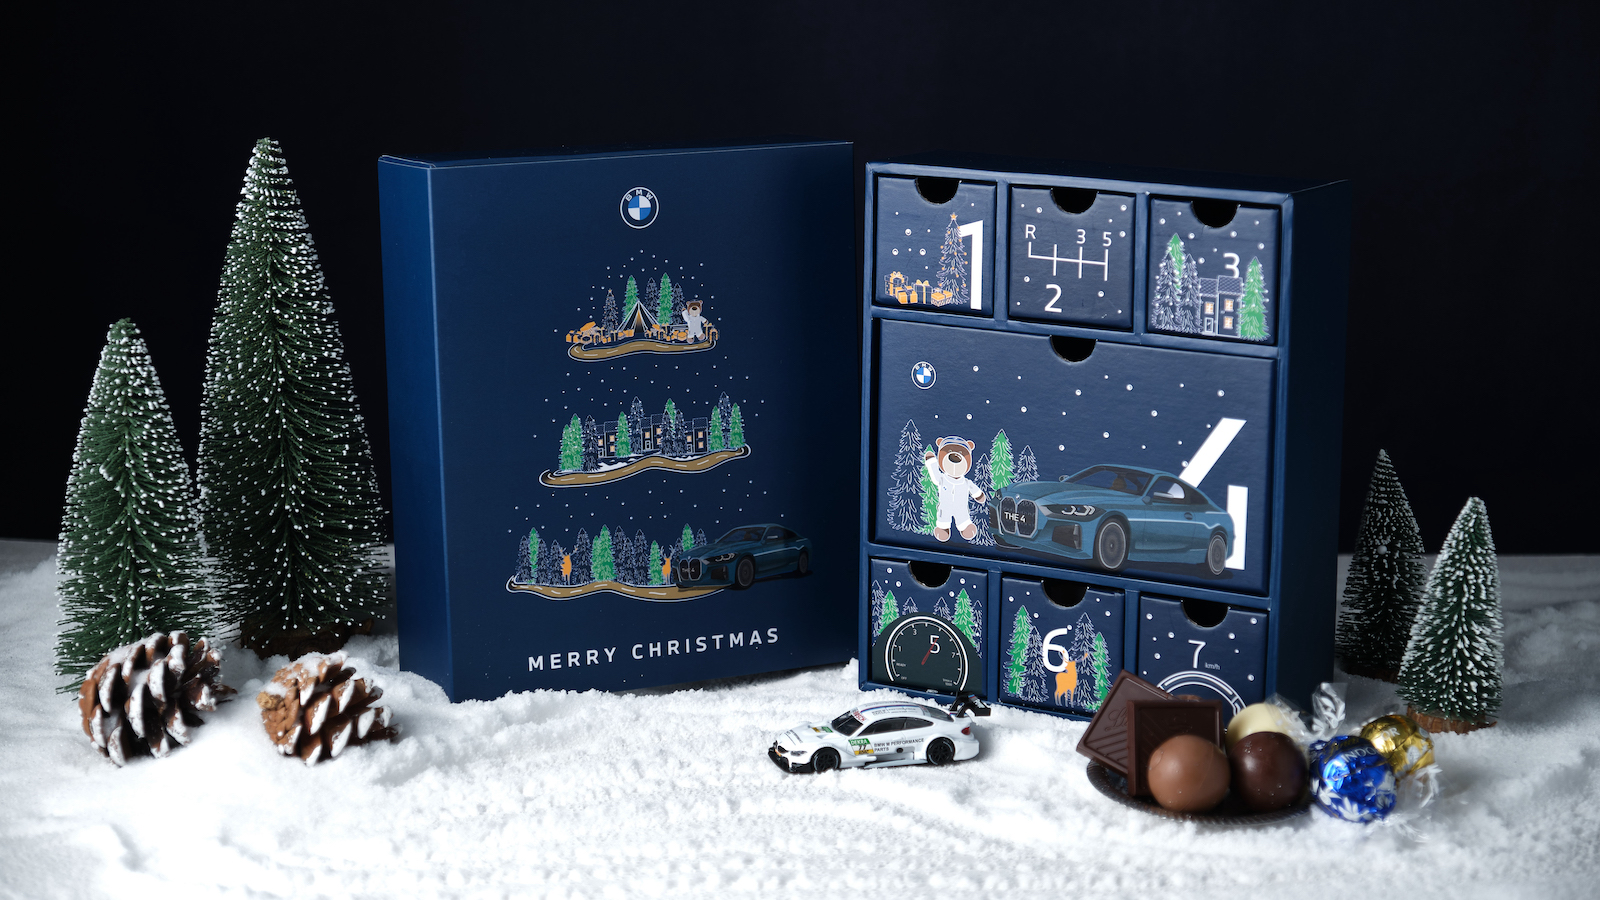 BMW 聖誕築夢計畫關懷兒童，捐款拿限量月曆